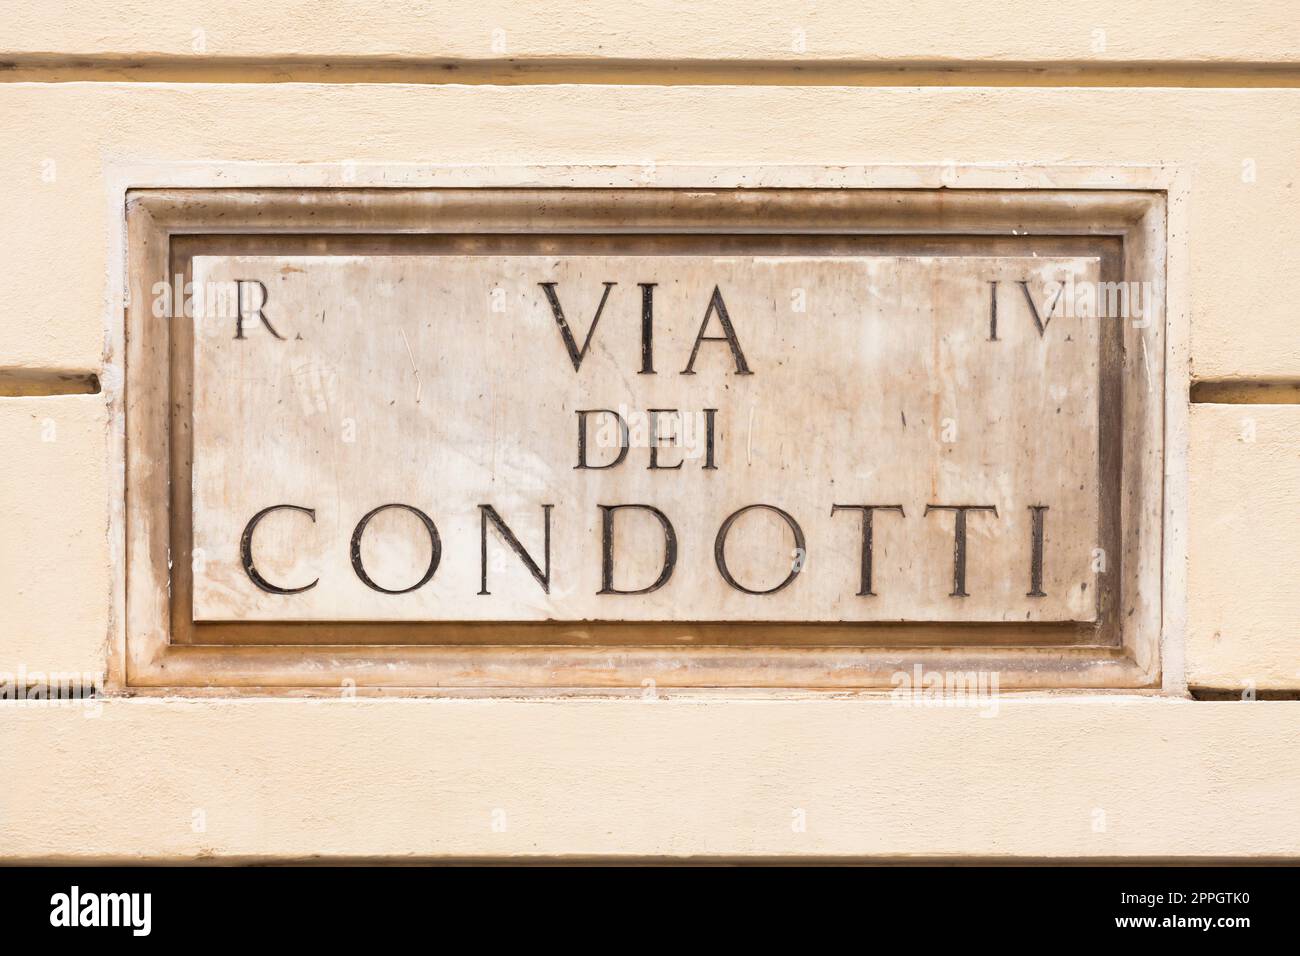 Roma, Italia. Targa della famosa strada condotti - Via dei condotti - centro dello shopping romano di lusso. Foto Stock